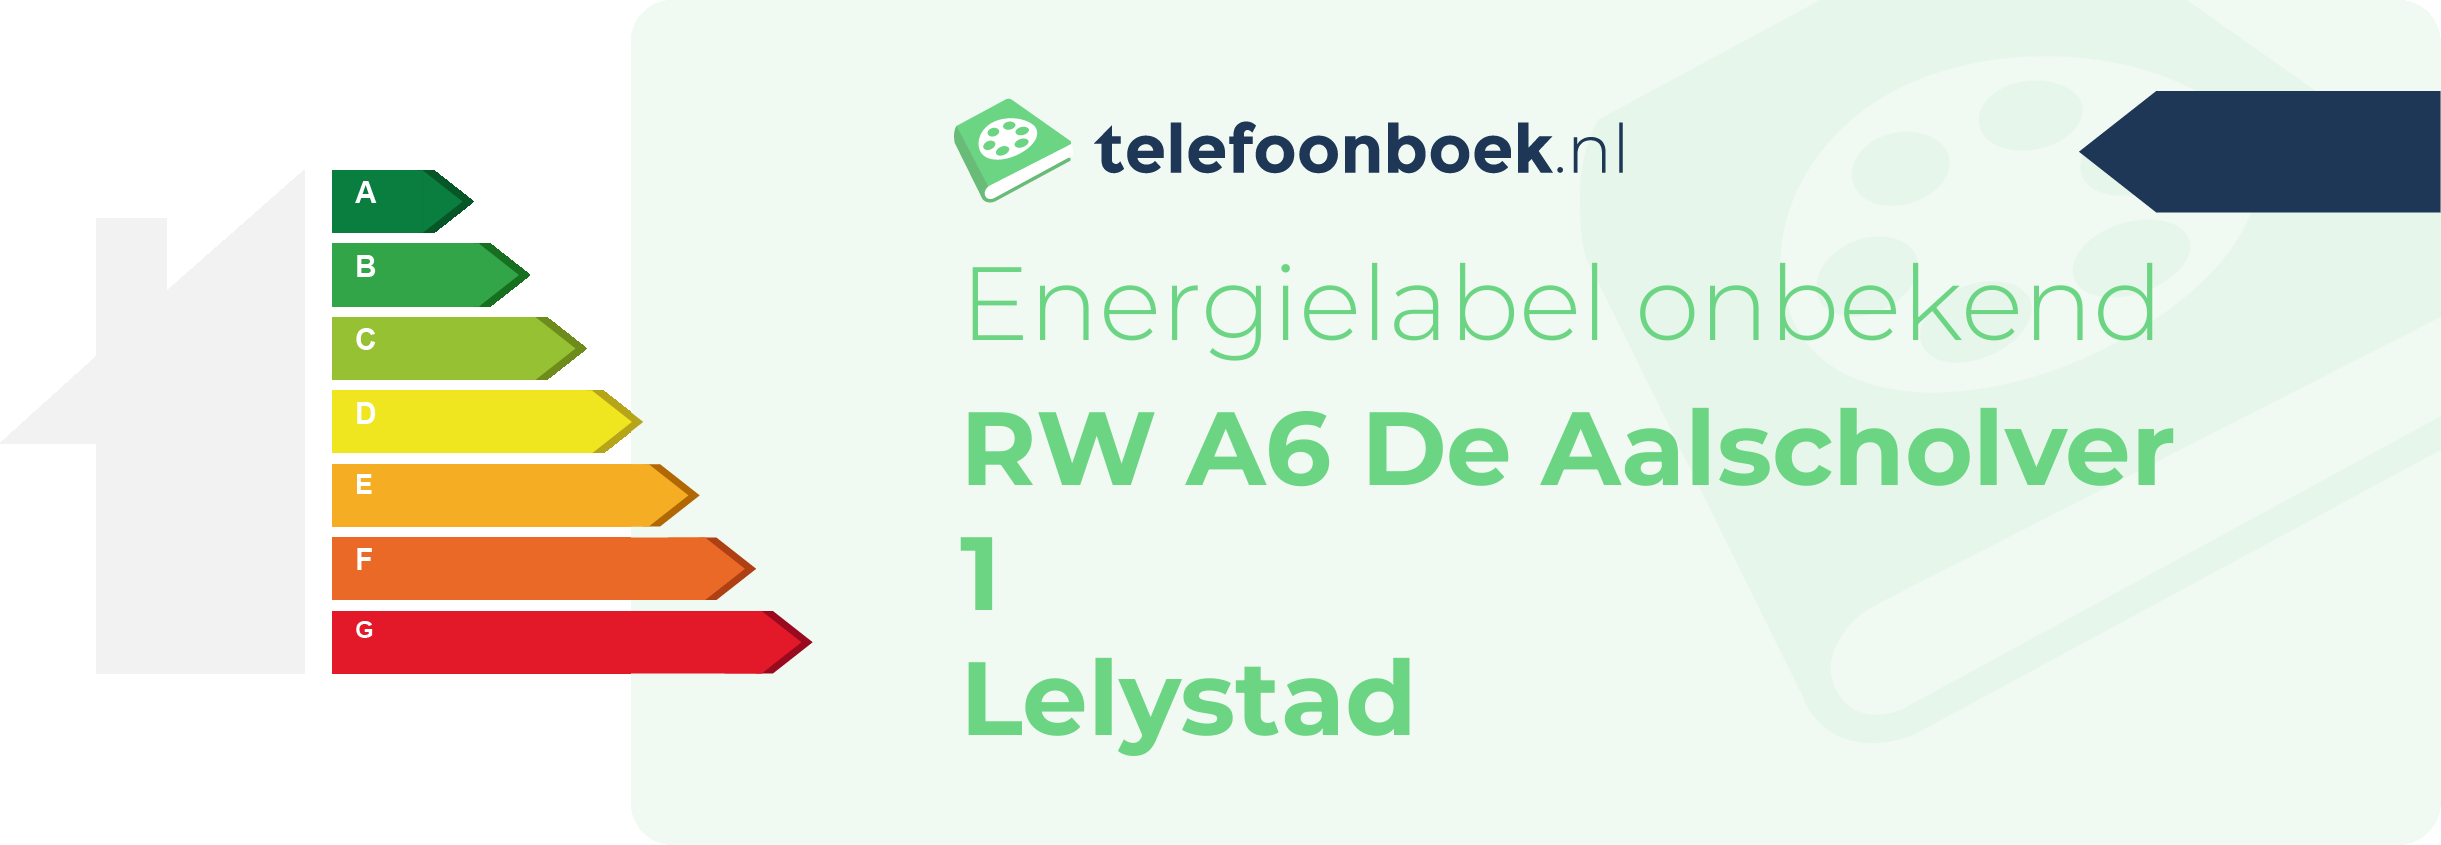 Energielabel RW A6 De Aalscholver 1 Lelystad